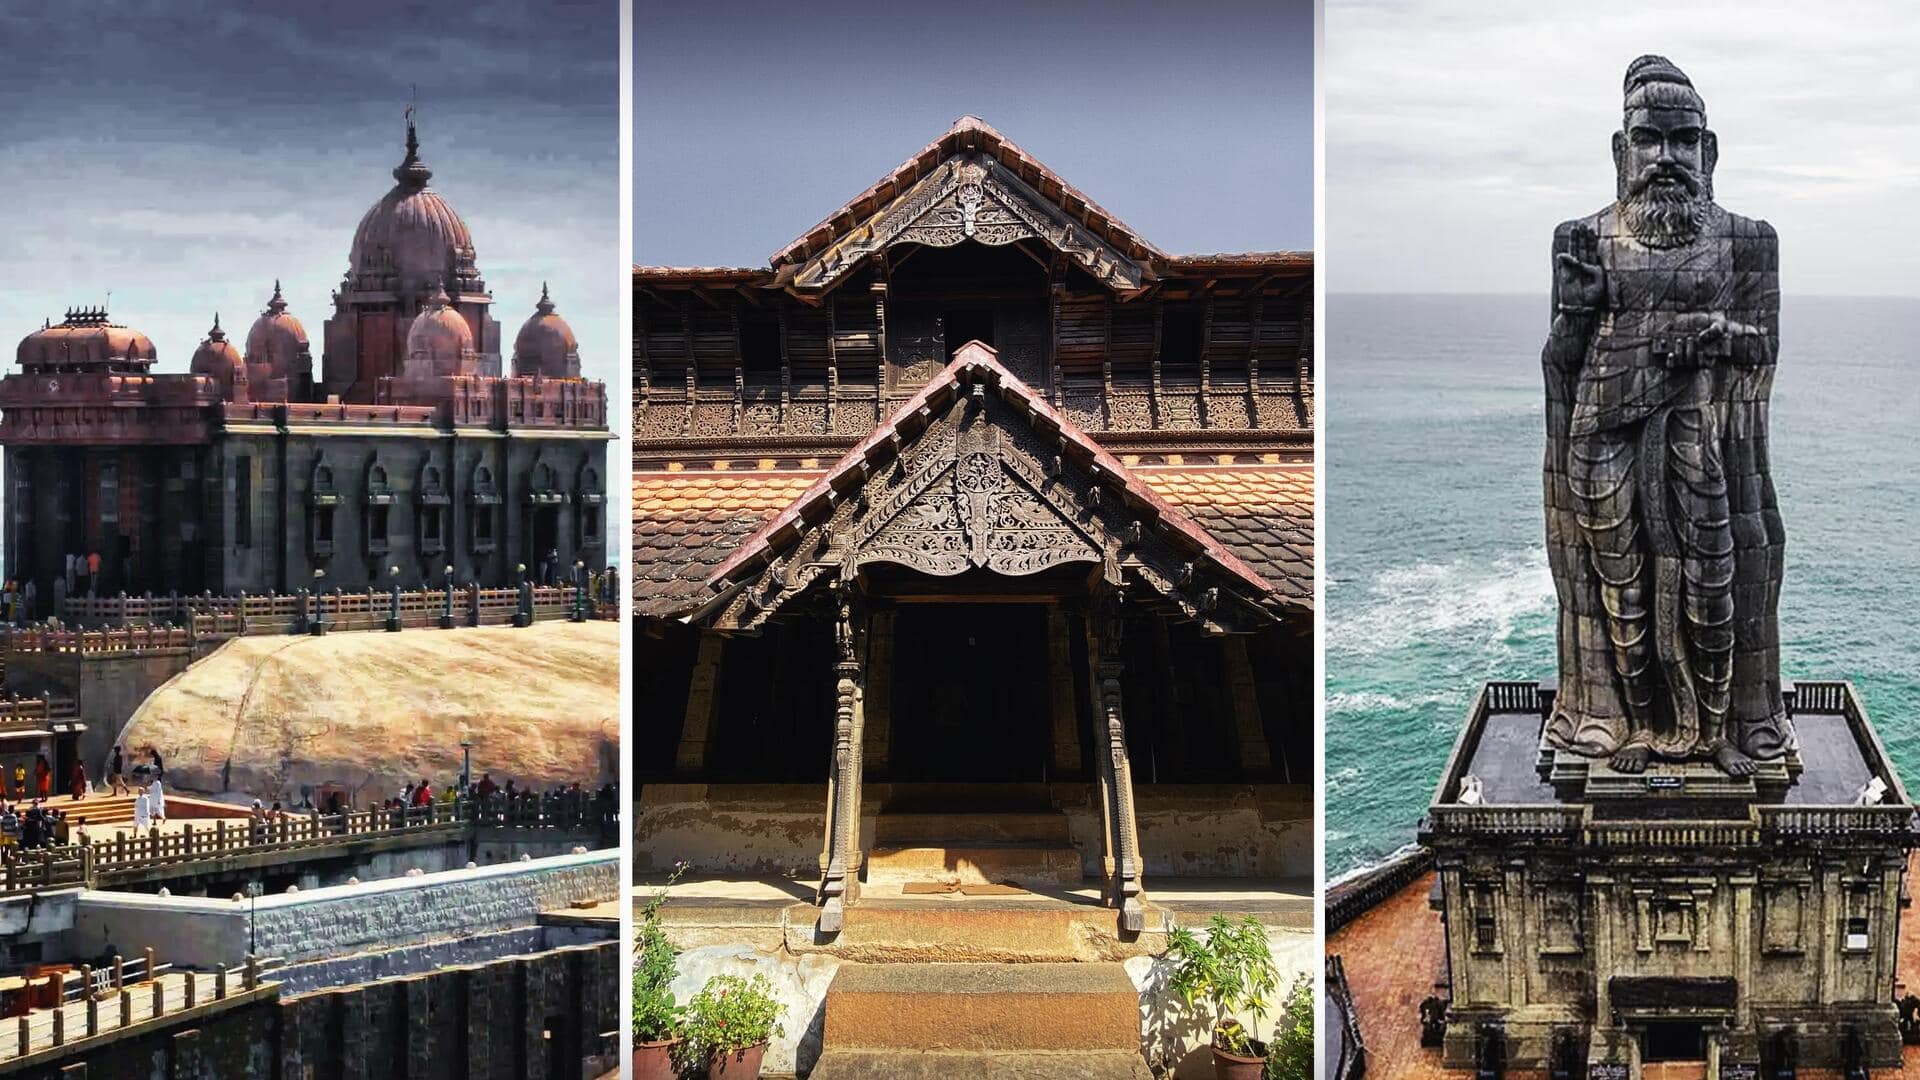 तमिलनाडु के कन्याकुमारी में स्थित हैं ये 5 घूमने योग्य जगहें, एक बार जरूर जाएं